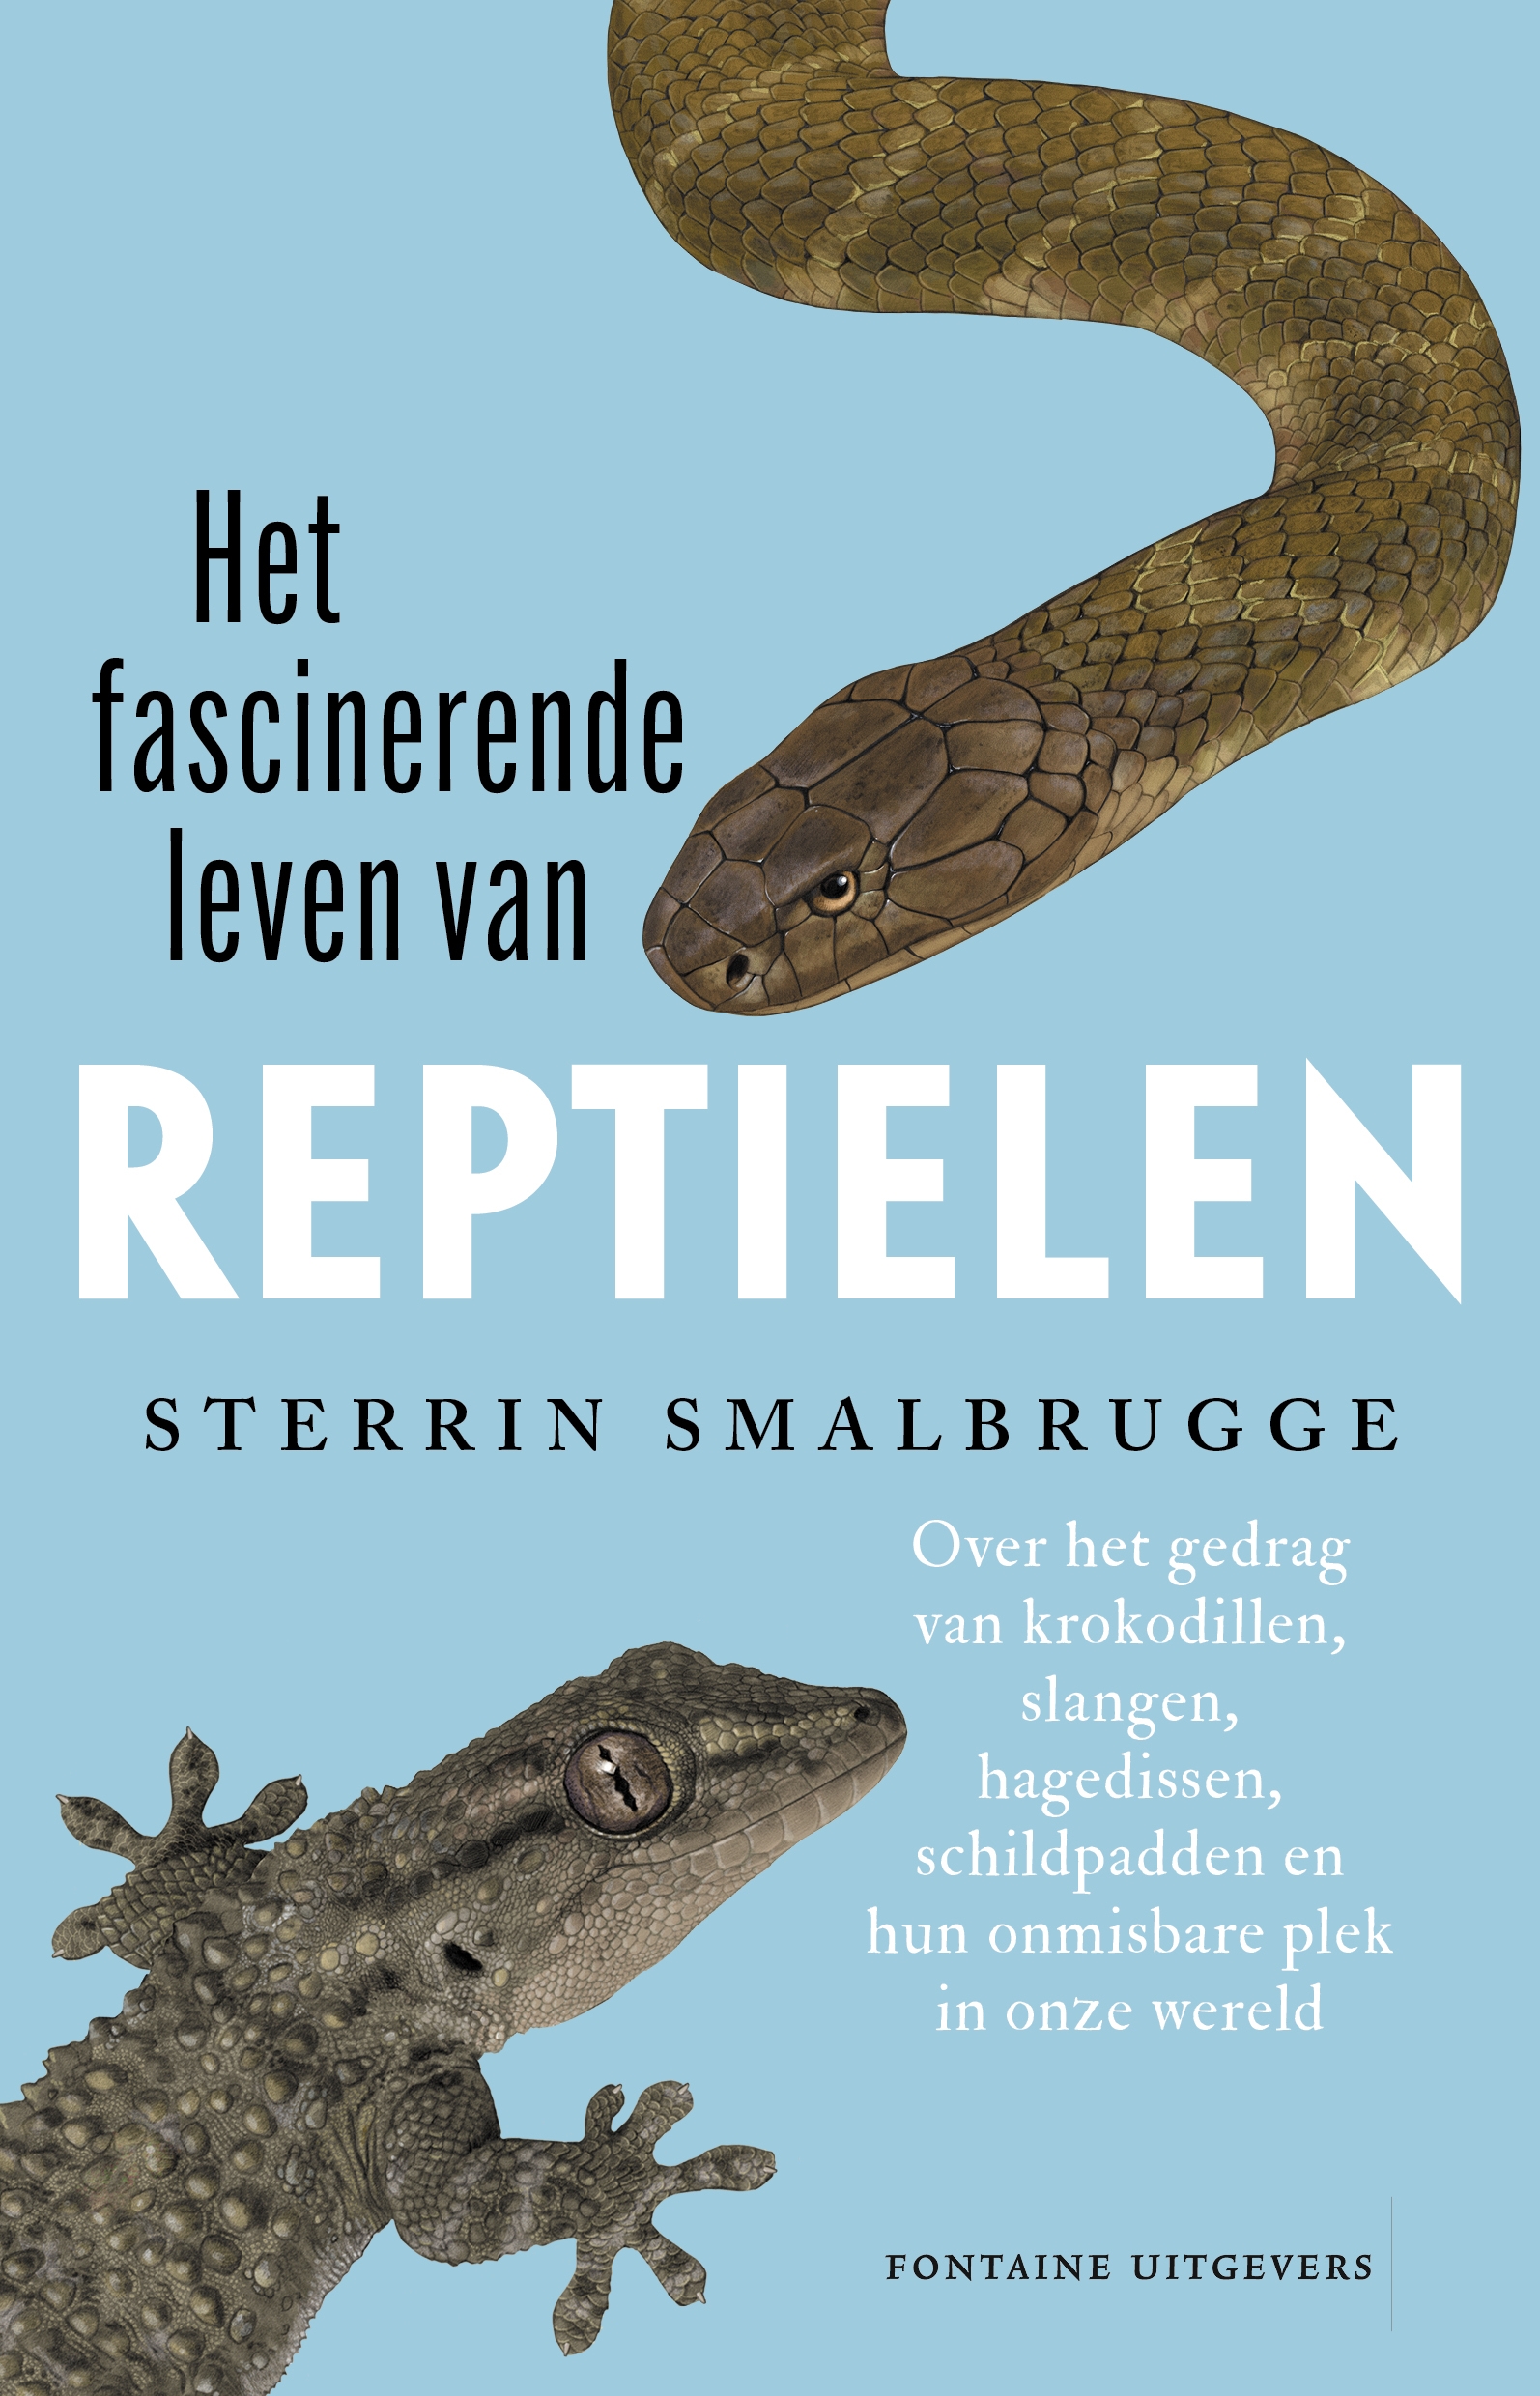 Sterrin Smalbrugge - Het fascinerende leven van reptielen